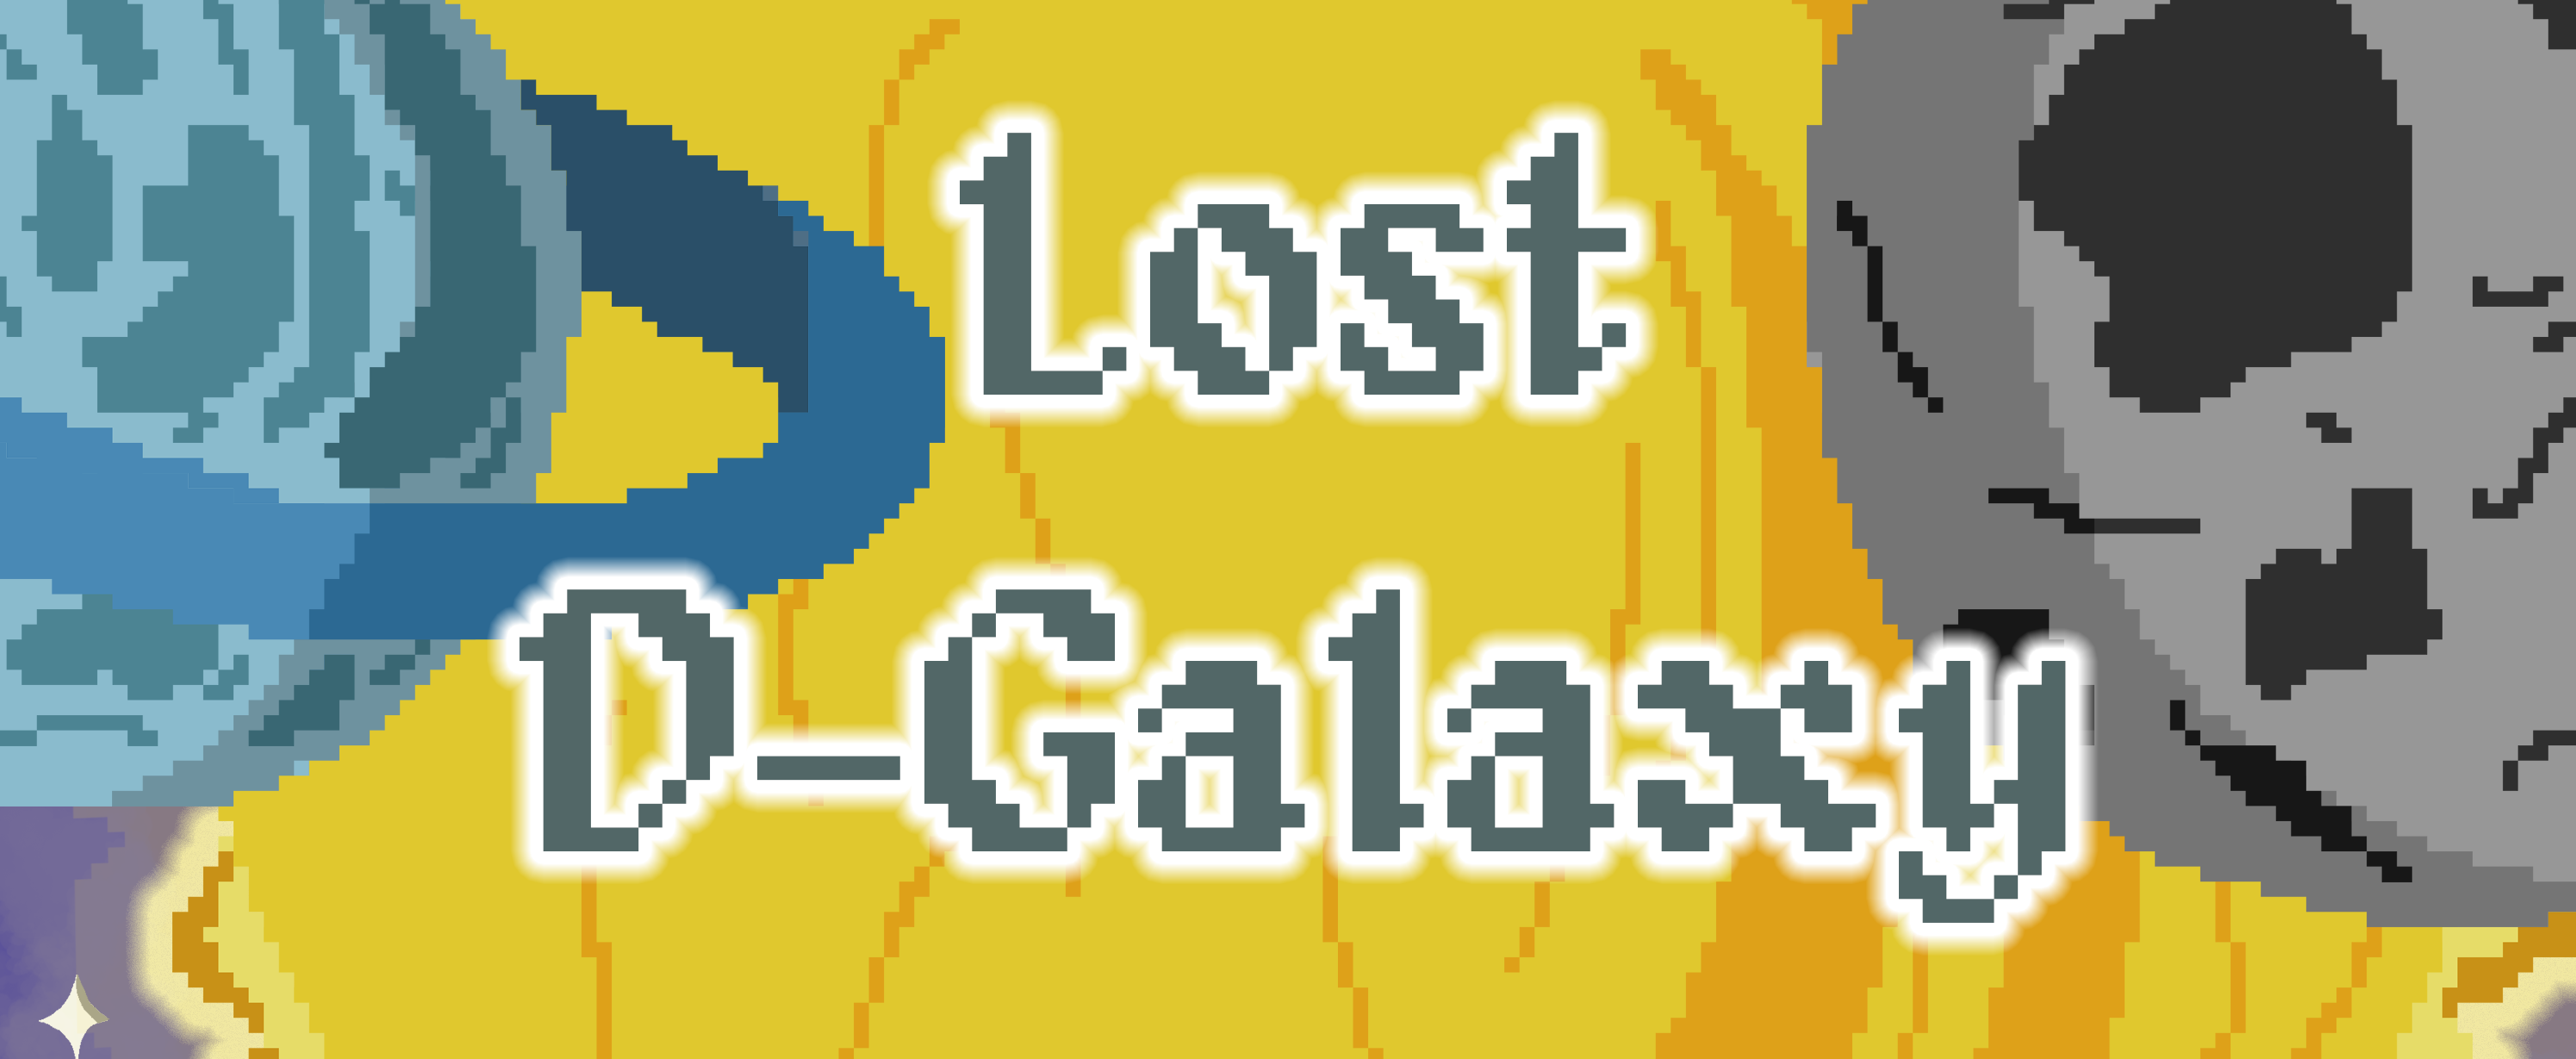 Lost D-Galaxy